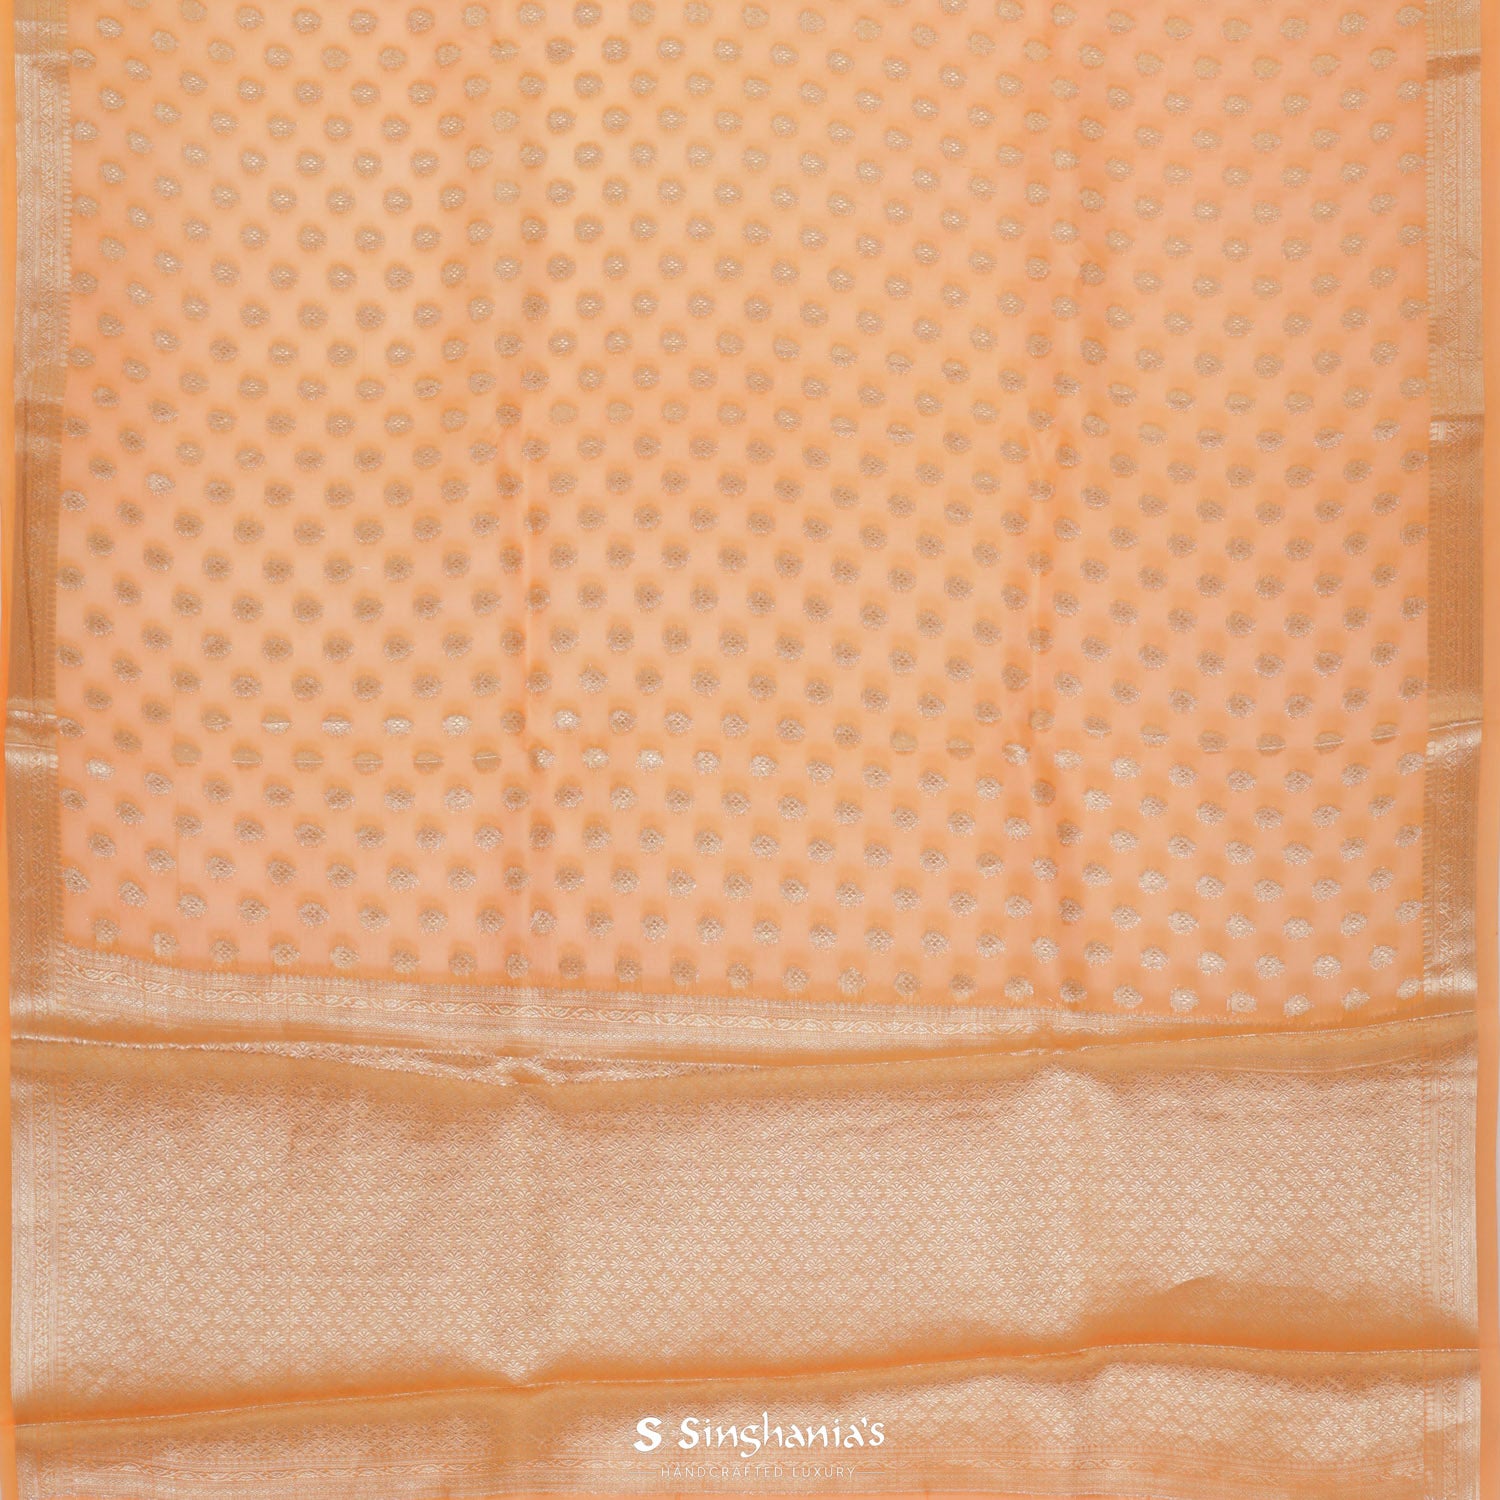 Princeton Orange Organza Saree With Banarasi Weaving